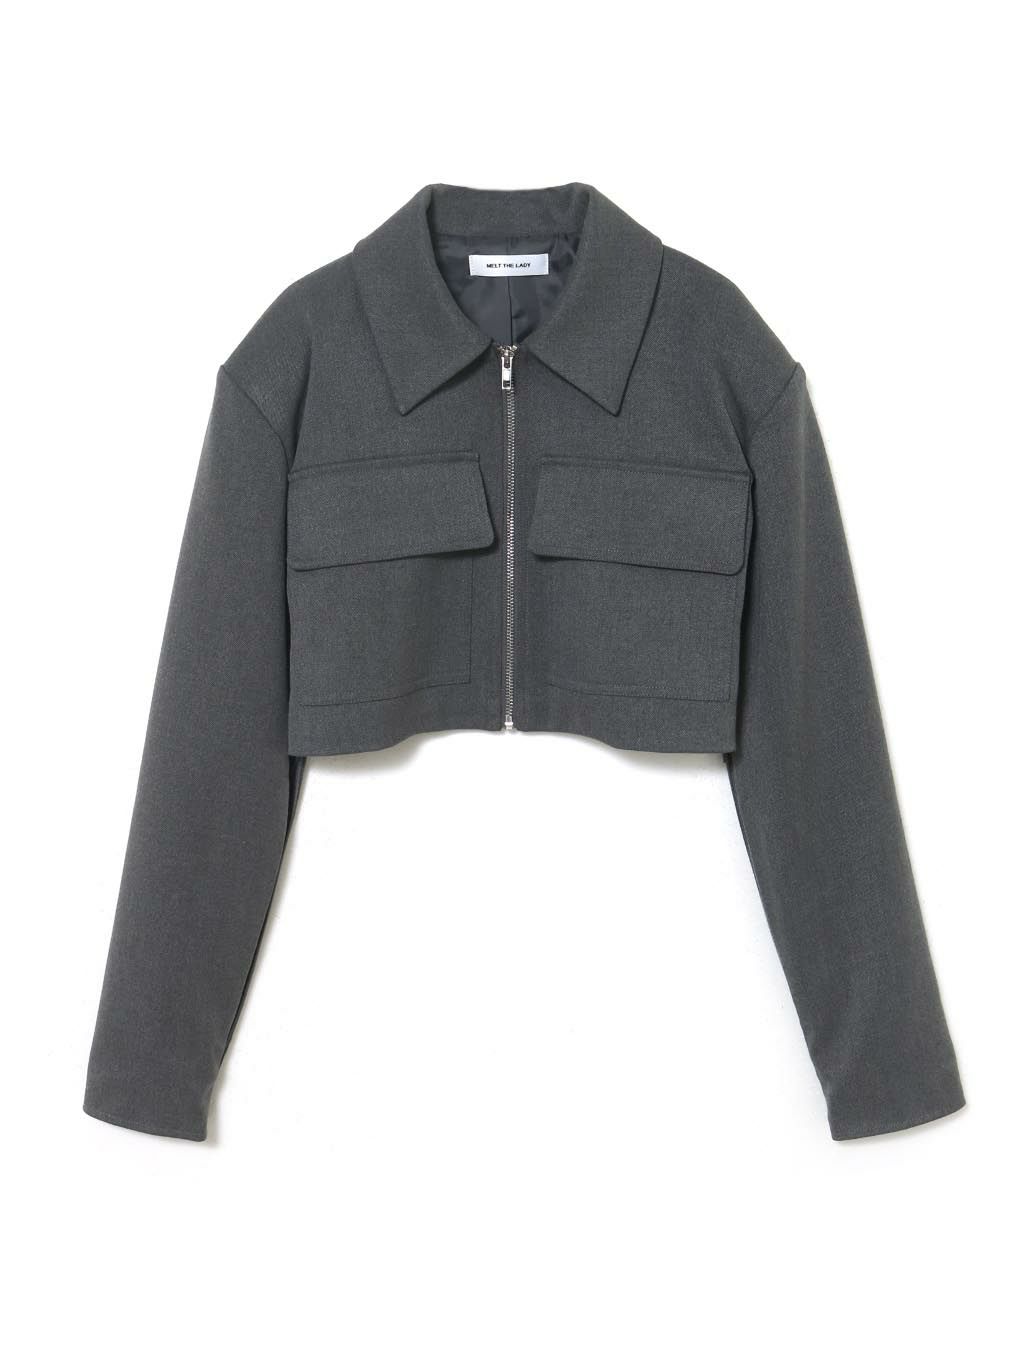 6,560円arm slit cropped jacket gray